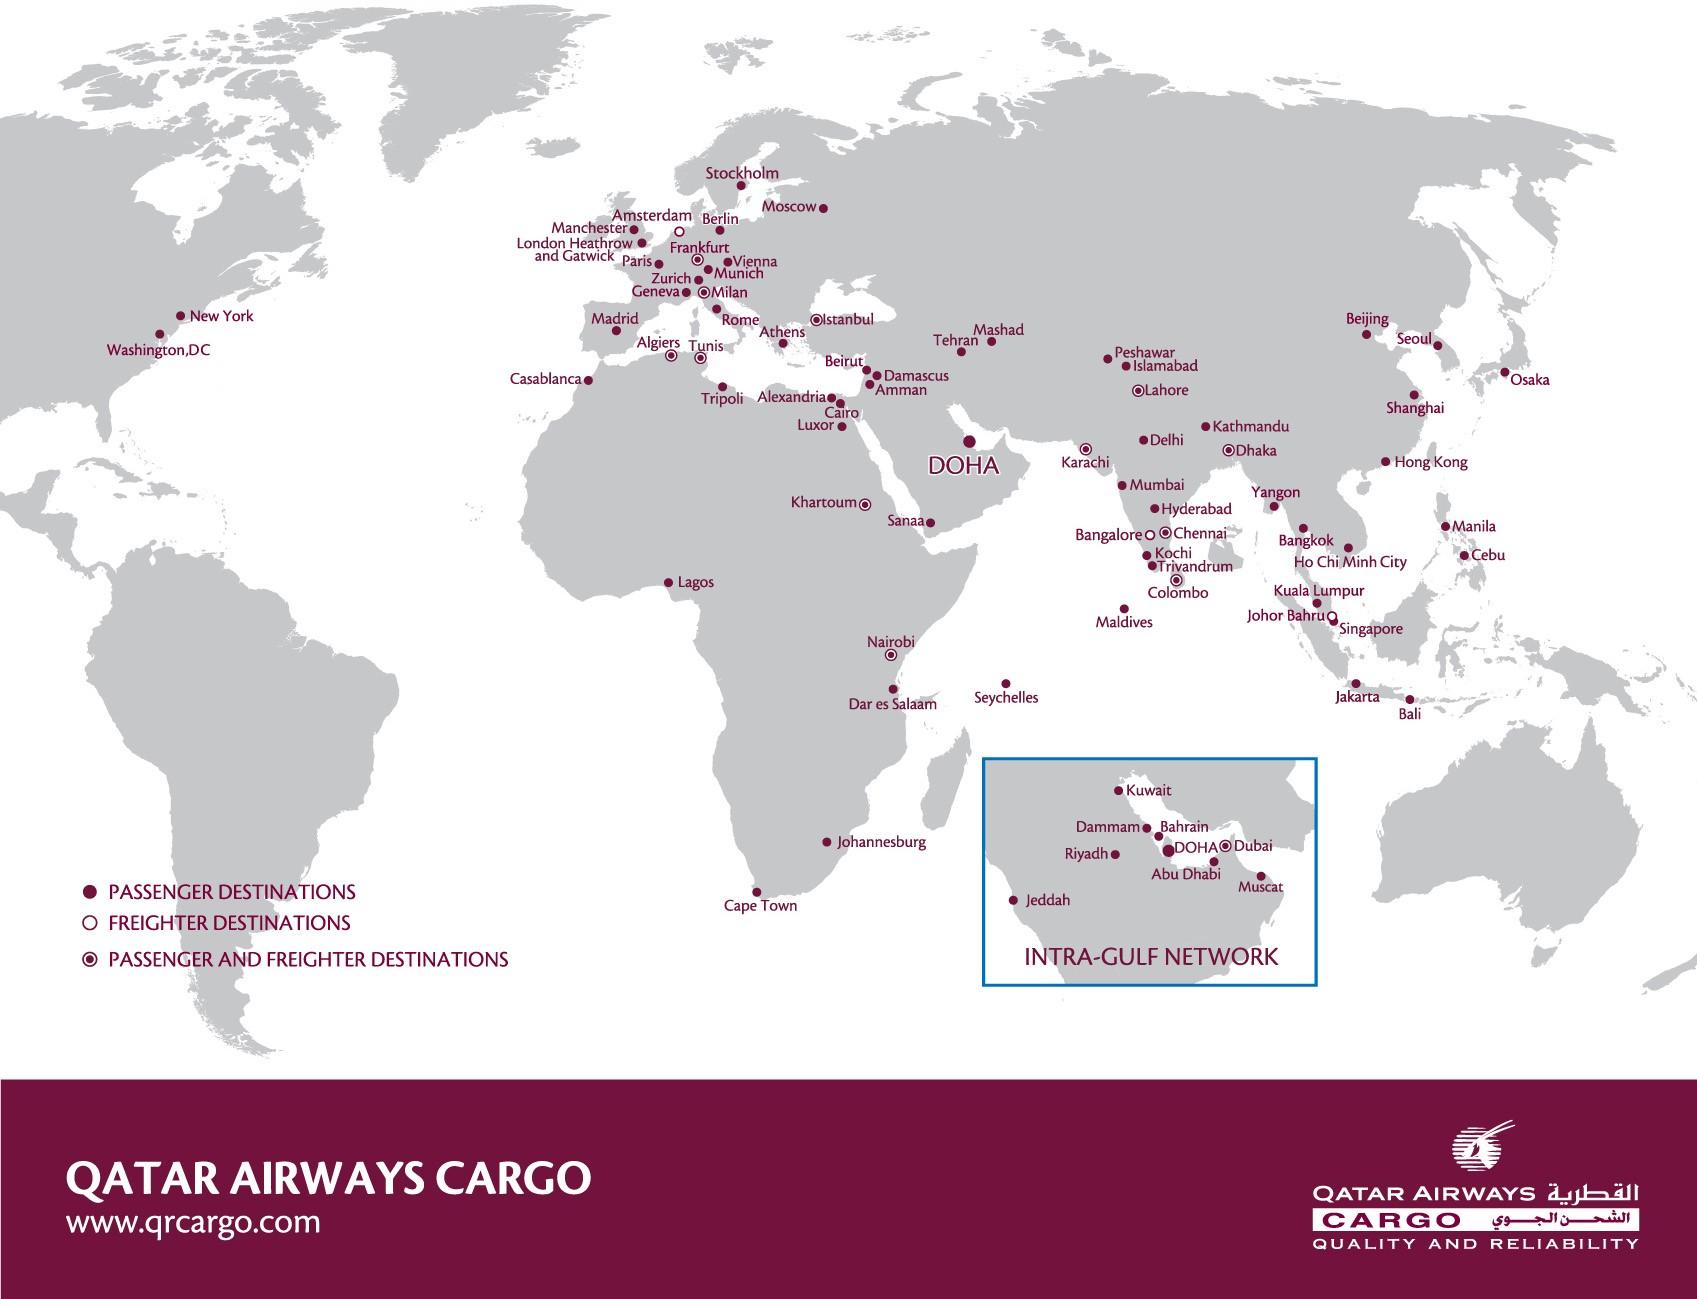 Qatar airways destinations map - Qatar airways network map (Western